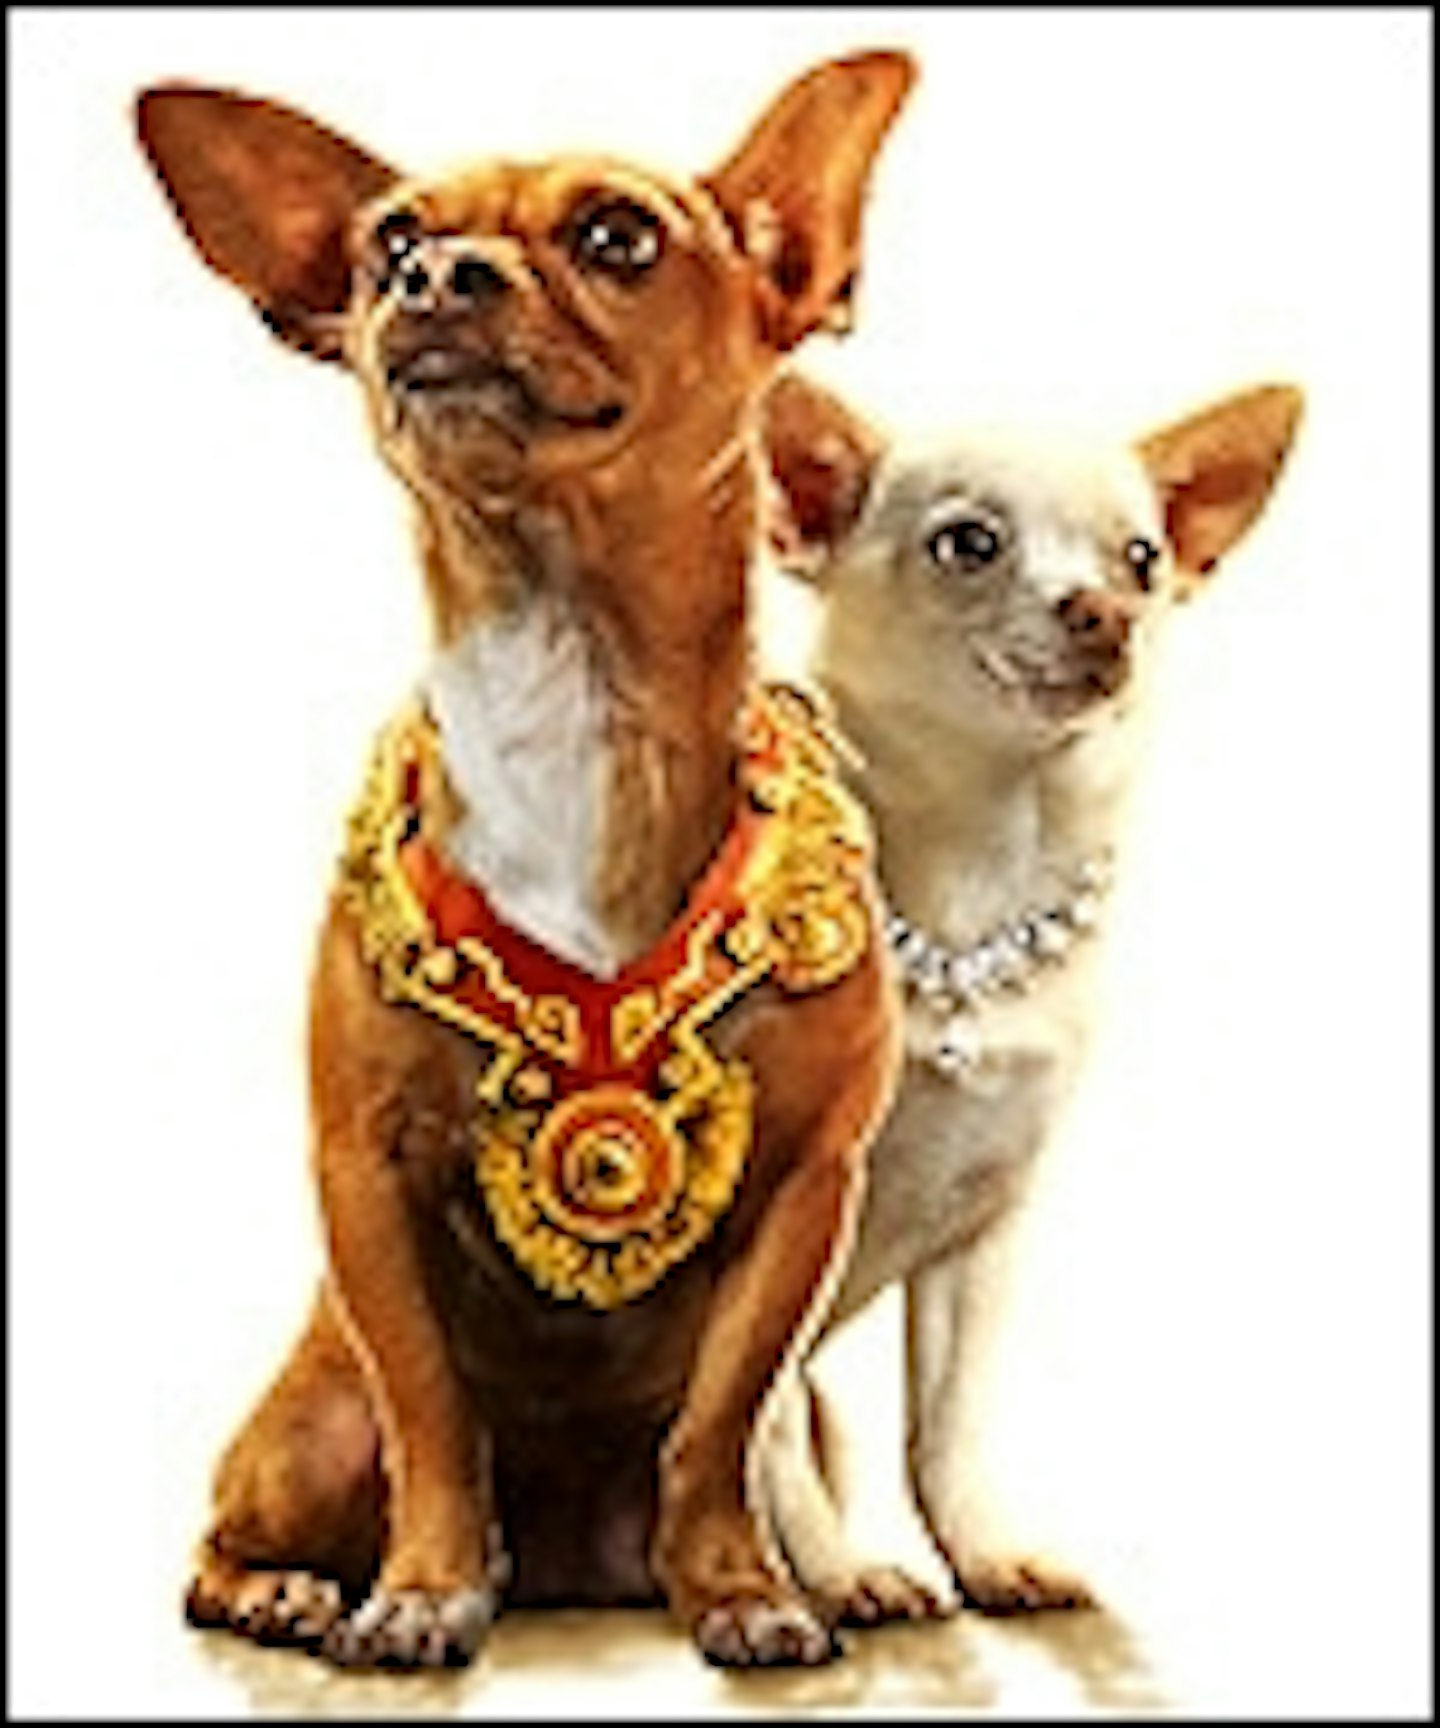 Chihuahua Flick Tops US Box Office